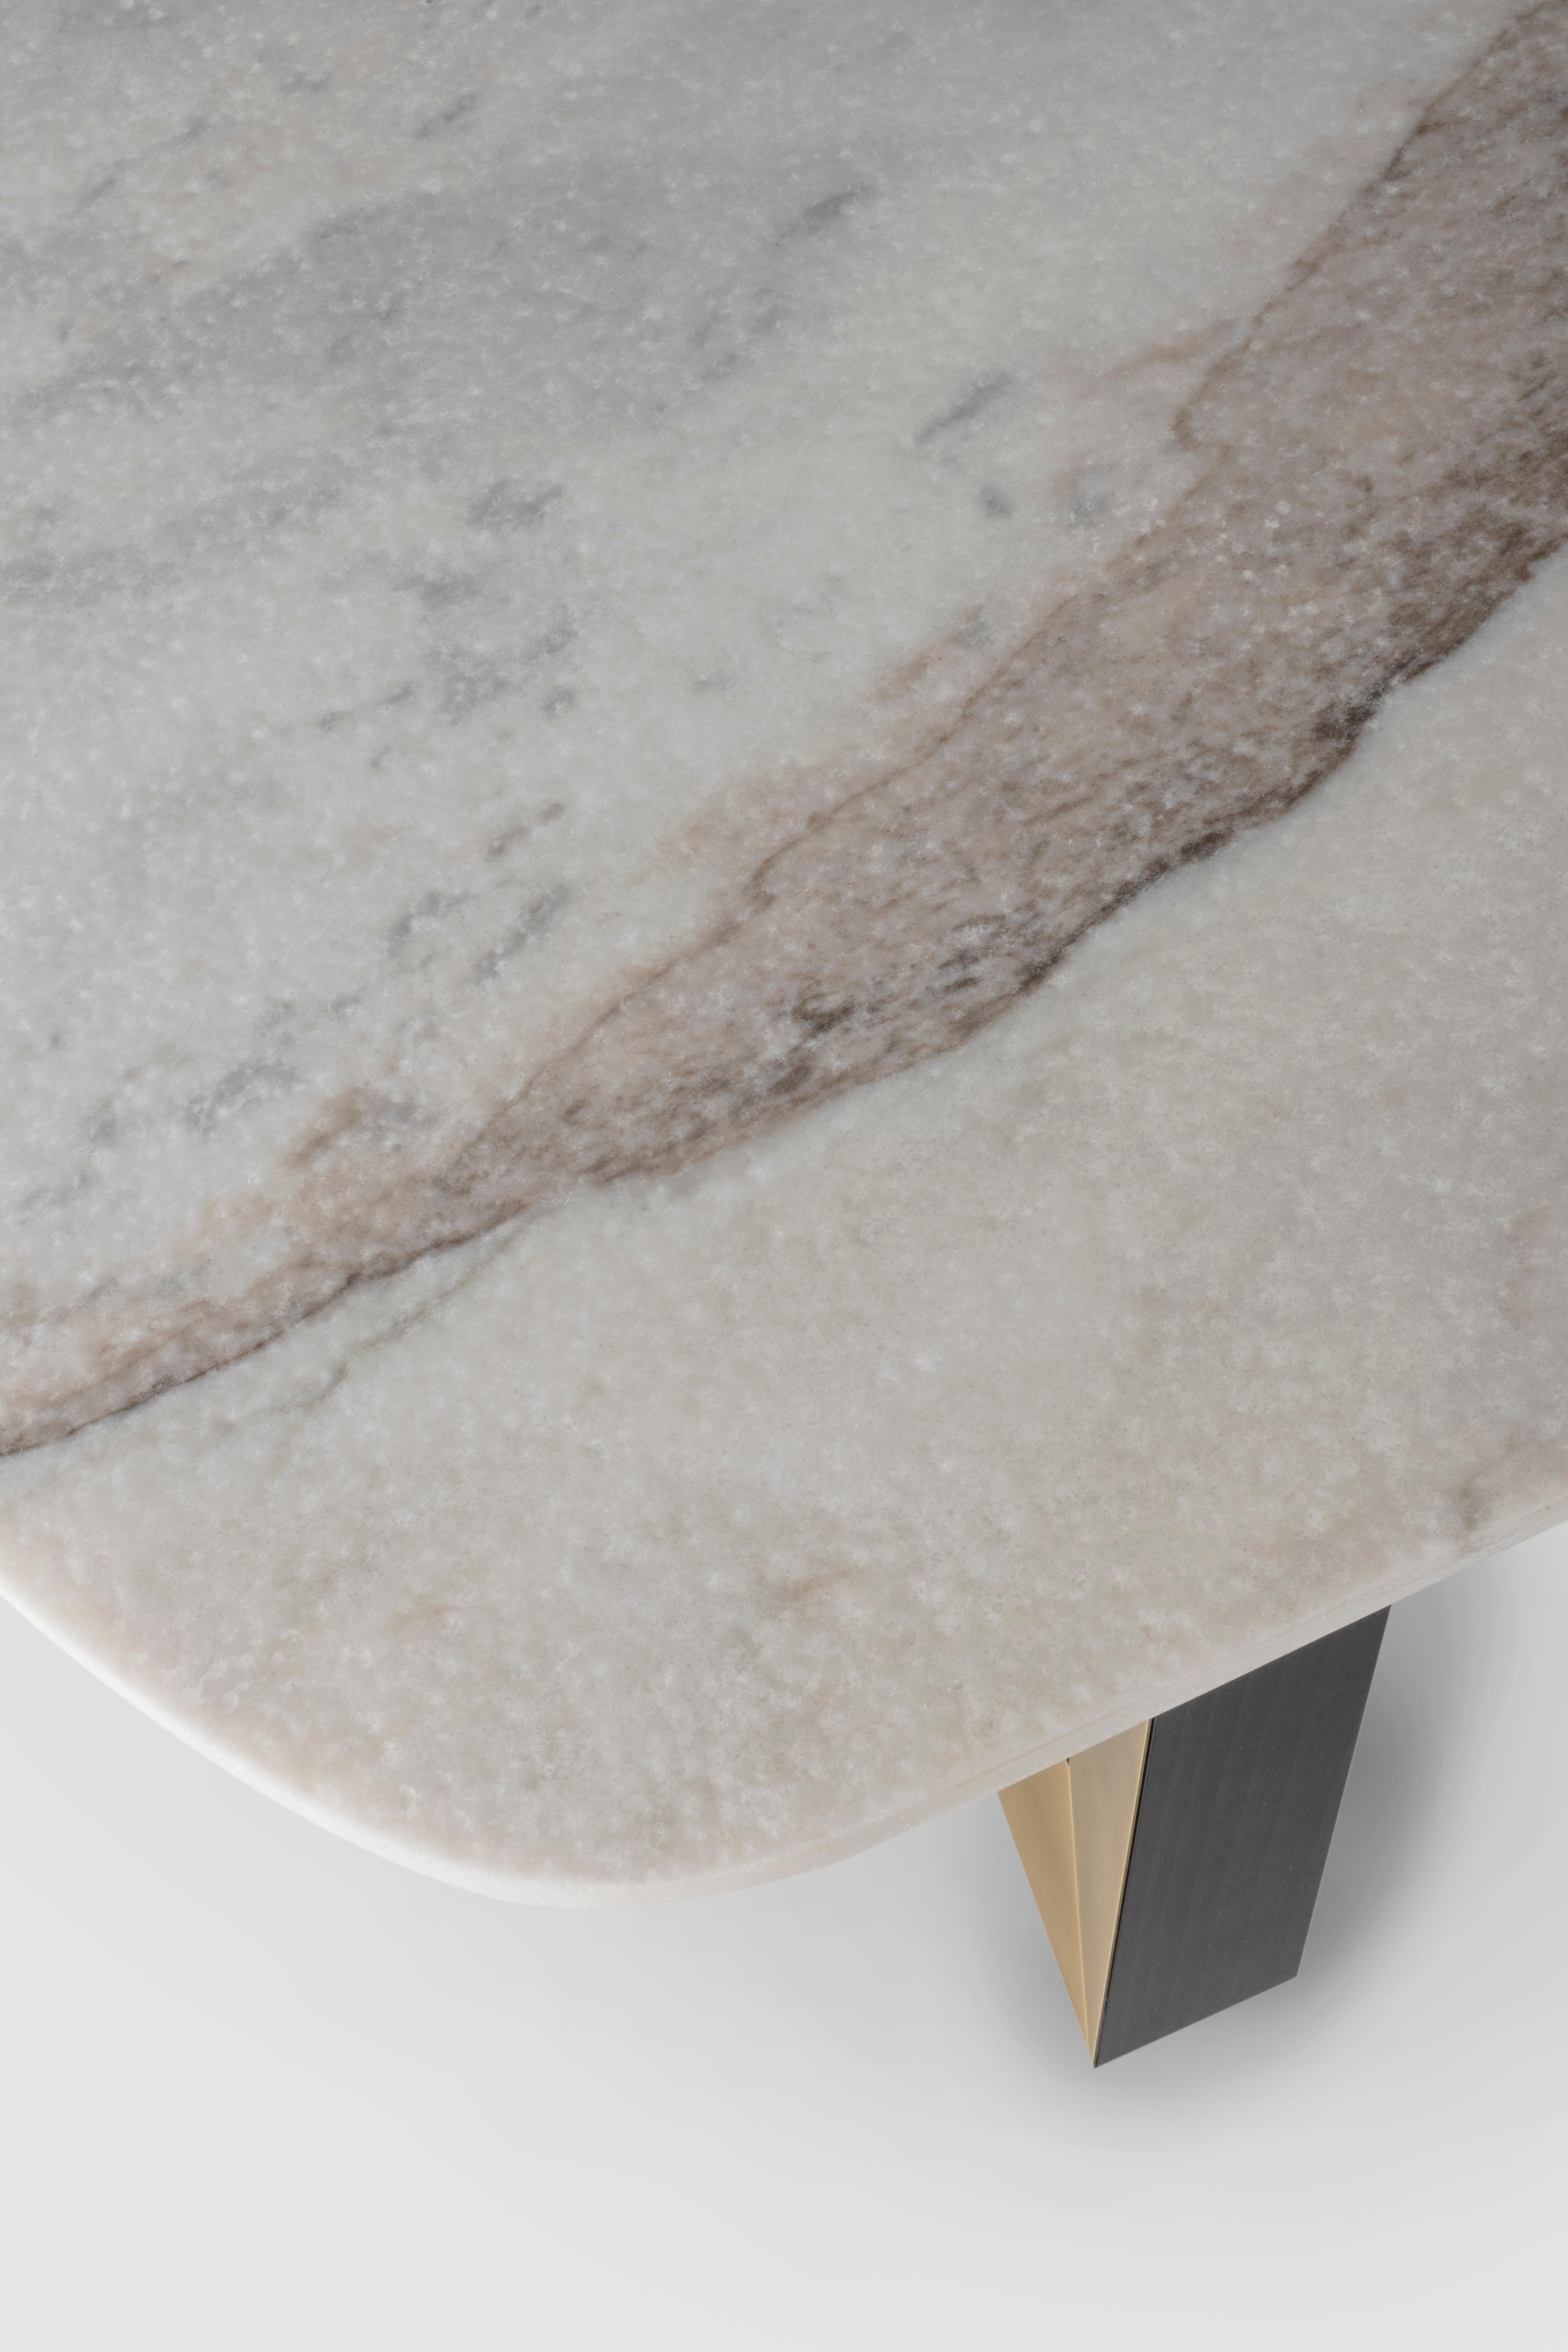 Laiton Table basse moderne Olisippo, marbre Calacatta, fabriquée à la main au Portugal par Greenapple en vente